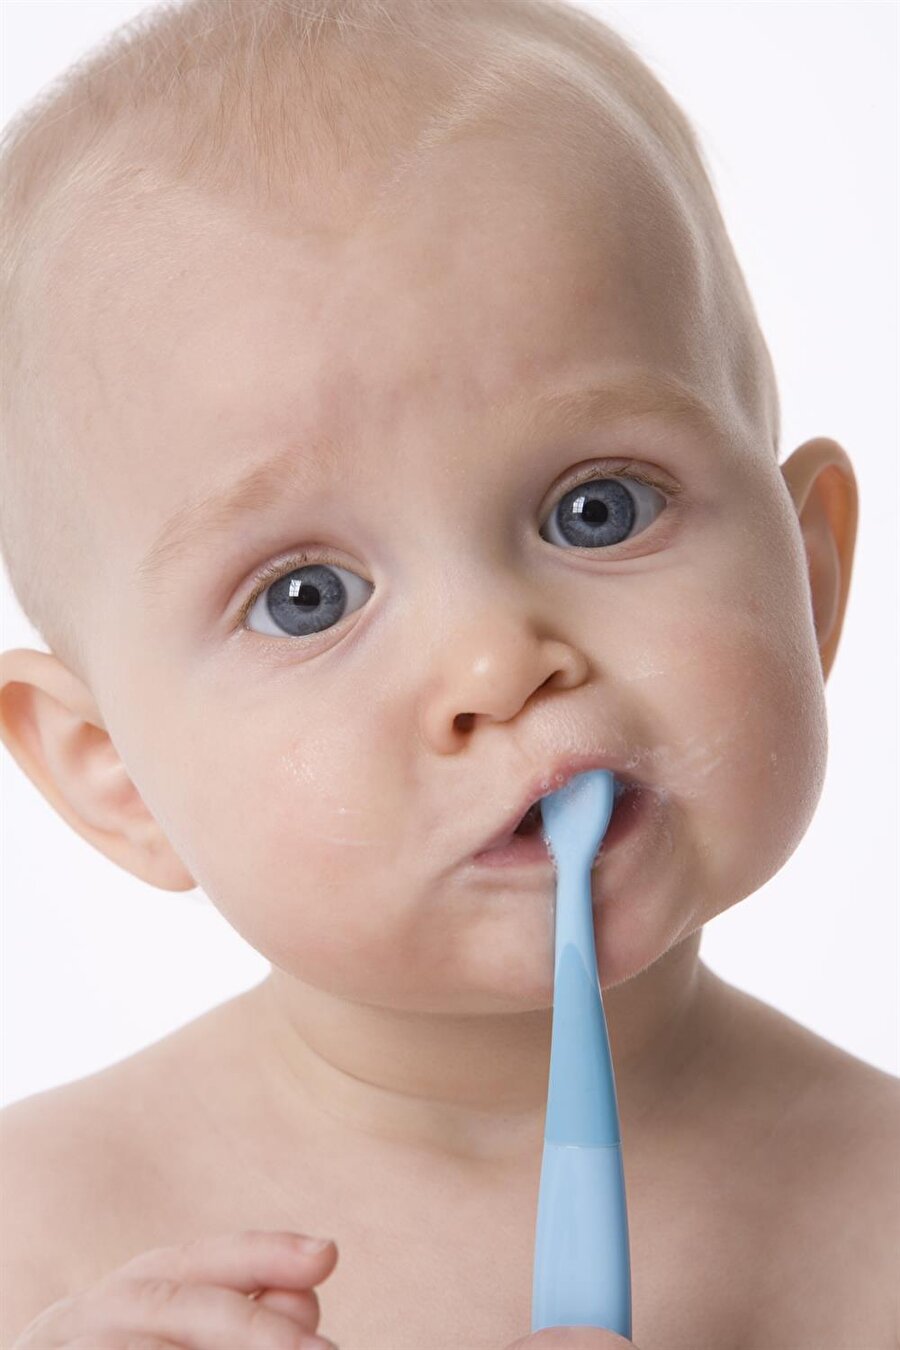 Diş fırçası

                                    
                                    
                                    Hangi dişinin çıktığının bilincinde olan, kaşınan yeri anlayabilen bir bebeğiniz varsa eline bir diş fırçası verin. Böylelikle bebeğiniz hem dişini kaşıyacak hem de oyalanacaktır. 
                                
                                
                                